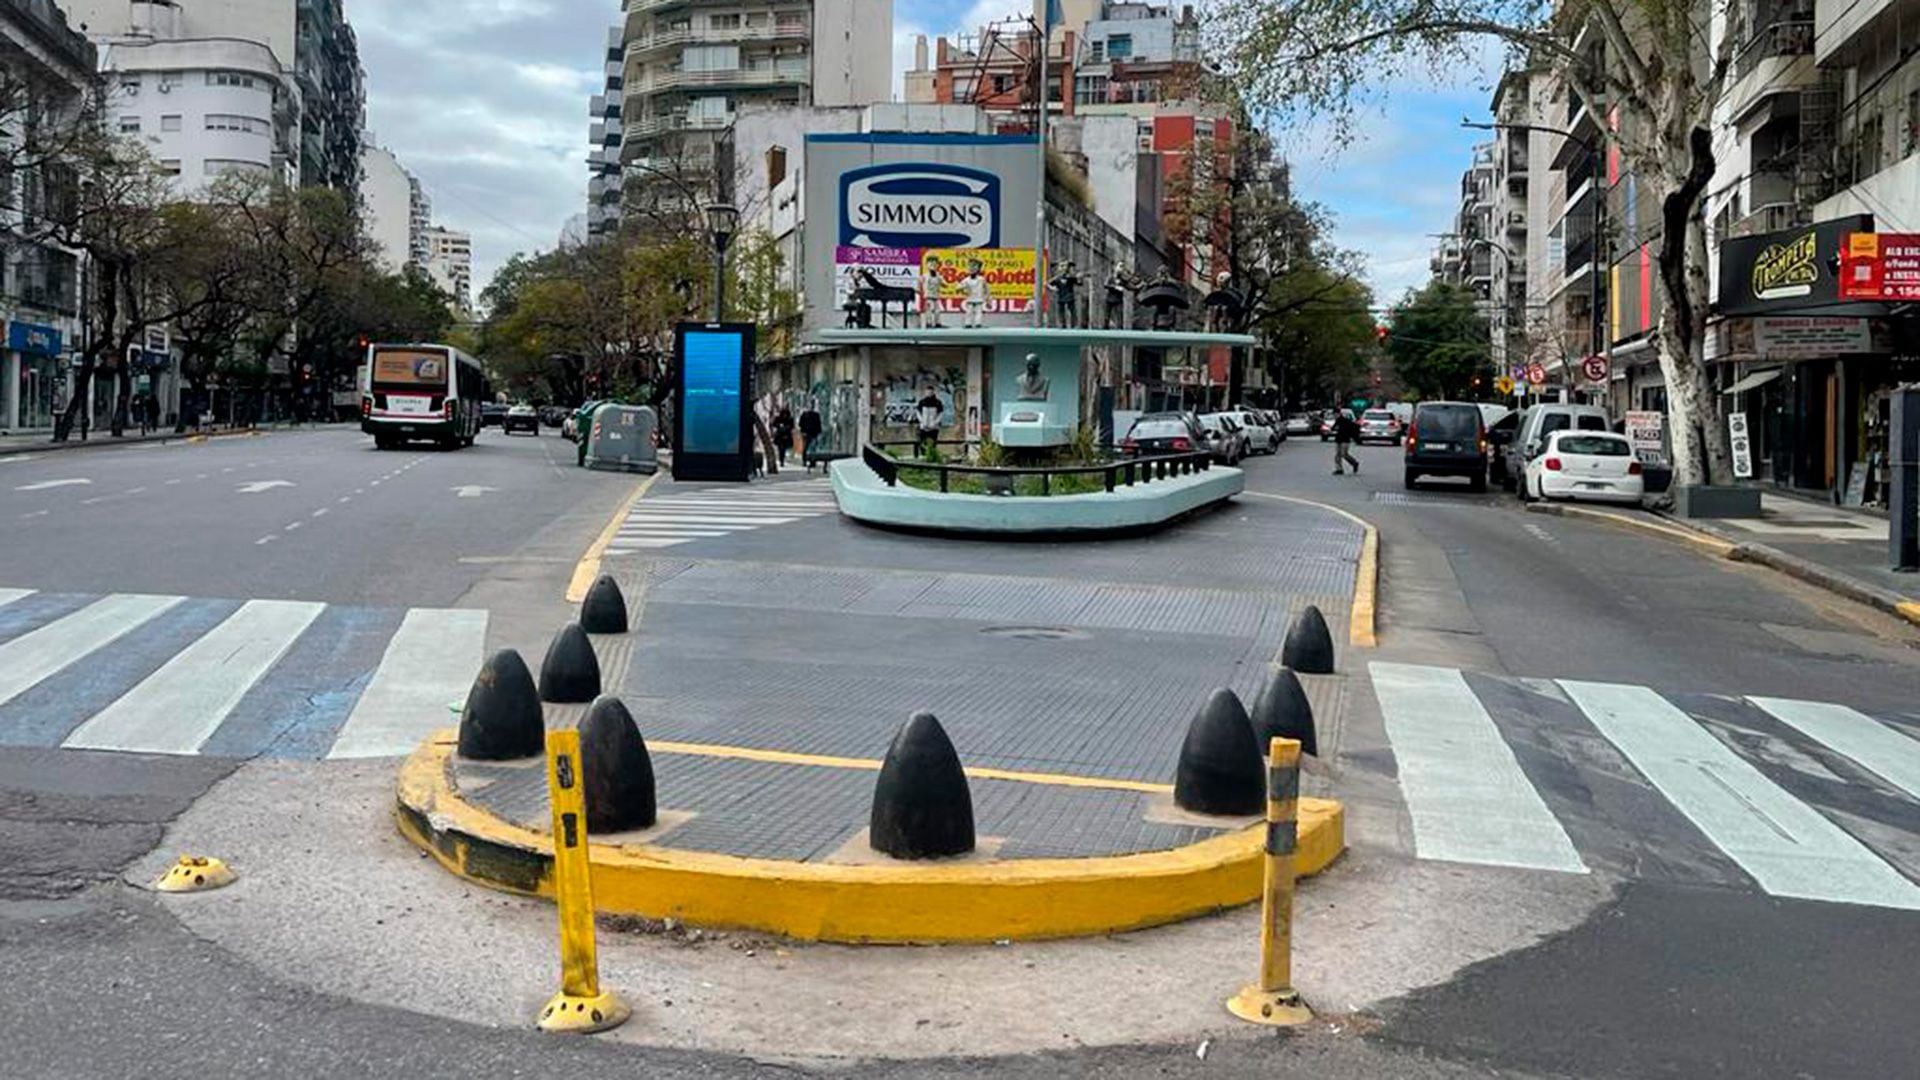 Imagen urbana que homenajea al gran pianista y compositor de tangos Osvaldo Pugliese, un símbolo del barrio. Allí confluyen las avenidas Corrientes, Scalabrini Ortiz y la calle Luis Drago